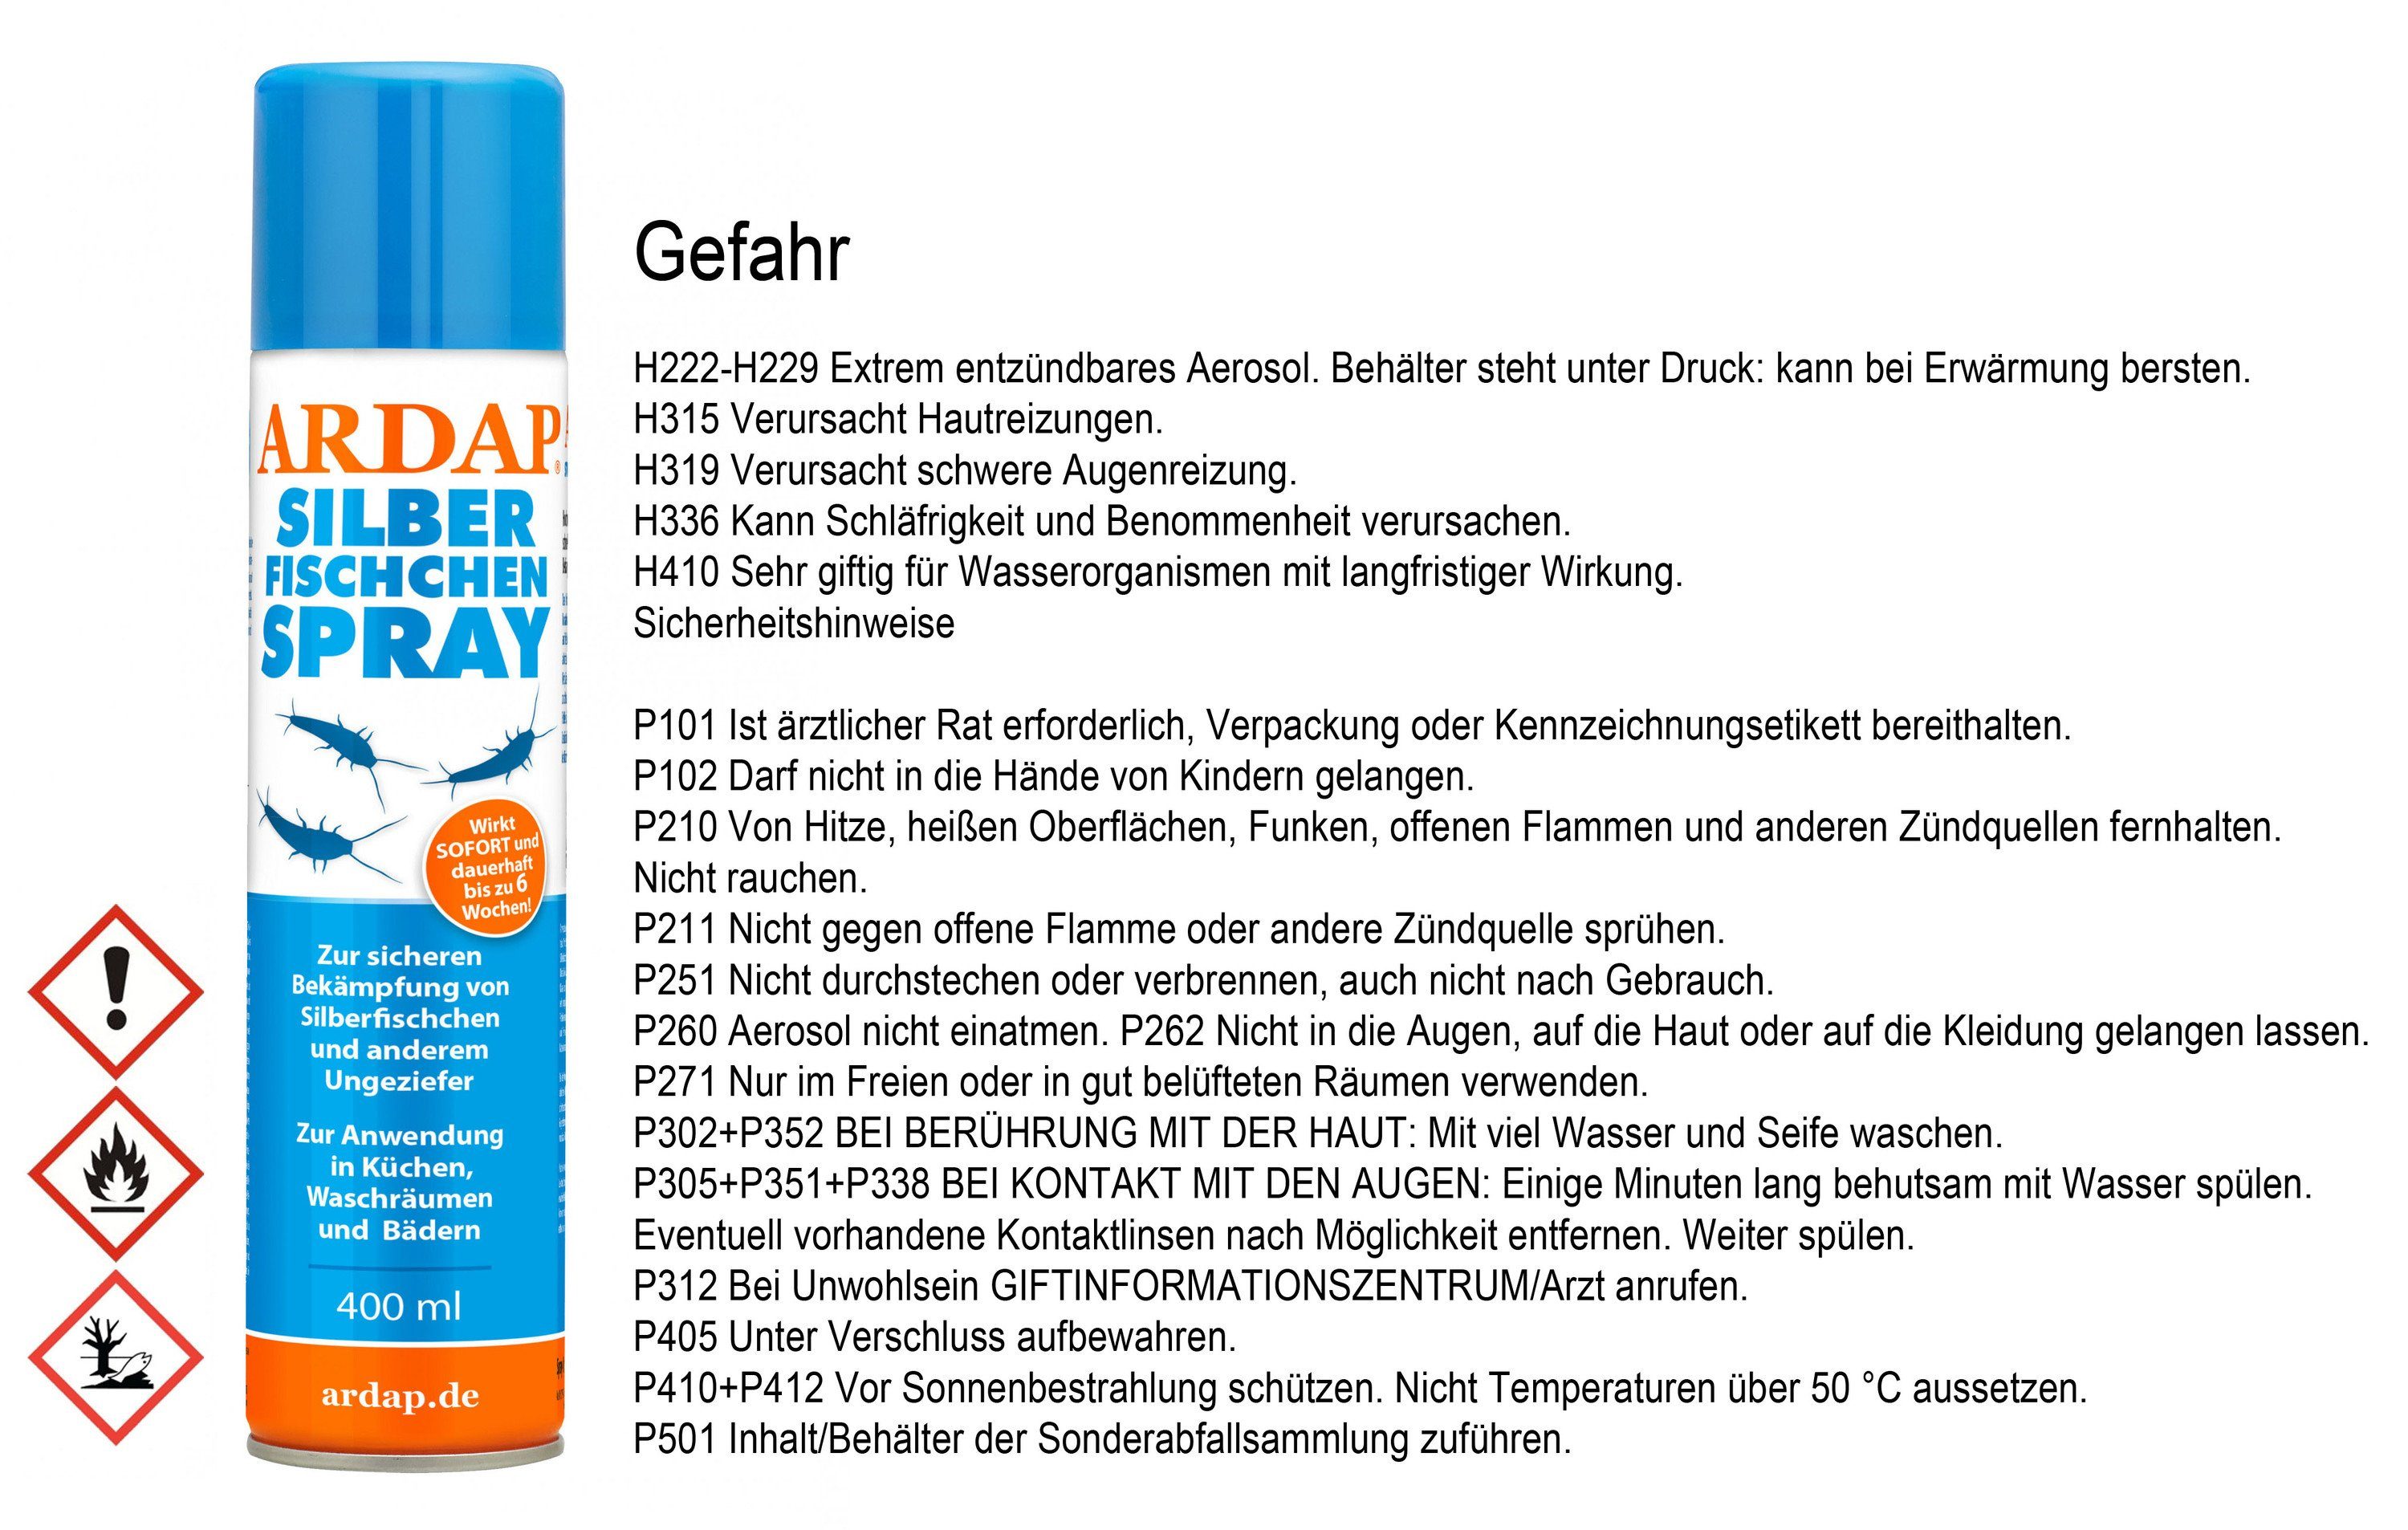 Ardap Insektenspray ARDAP® Silberfischchen Spray Insektizid mit Sofort- und Langzeitwirkung bis zu 6 Wochen 400ml